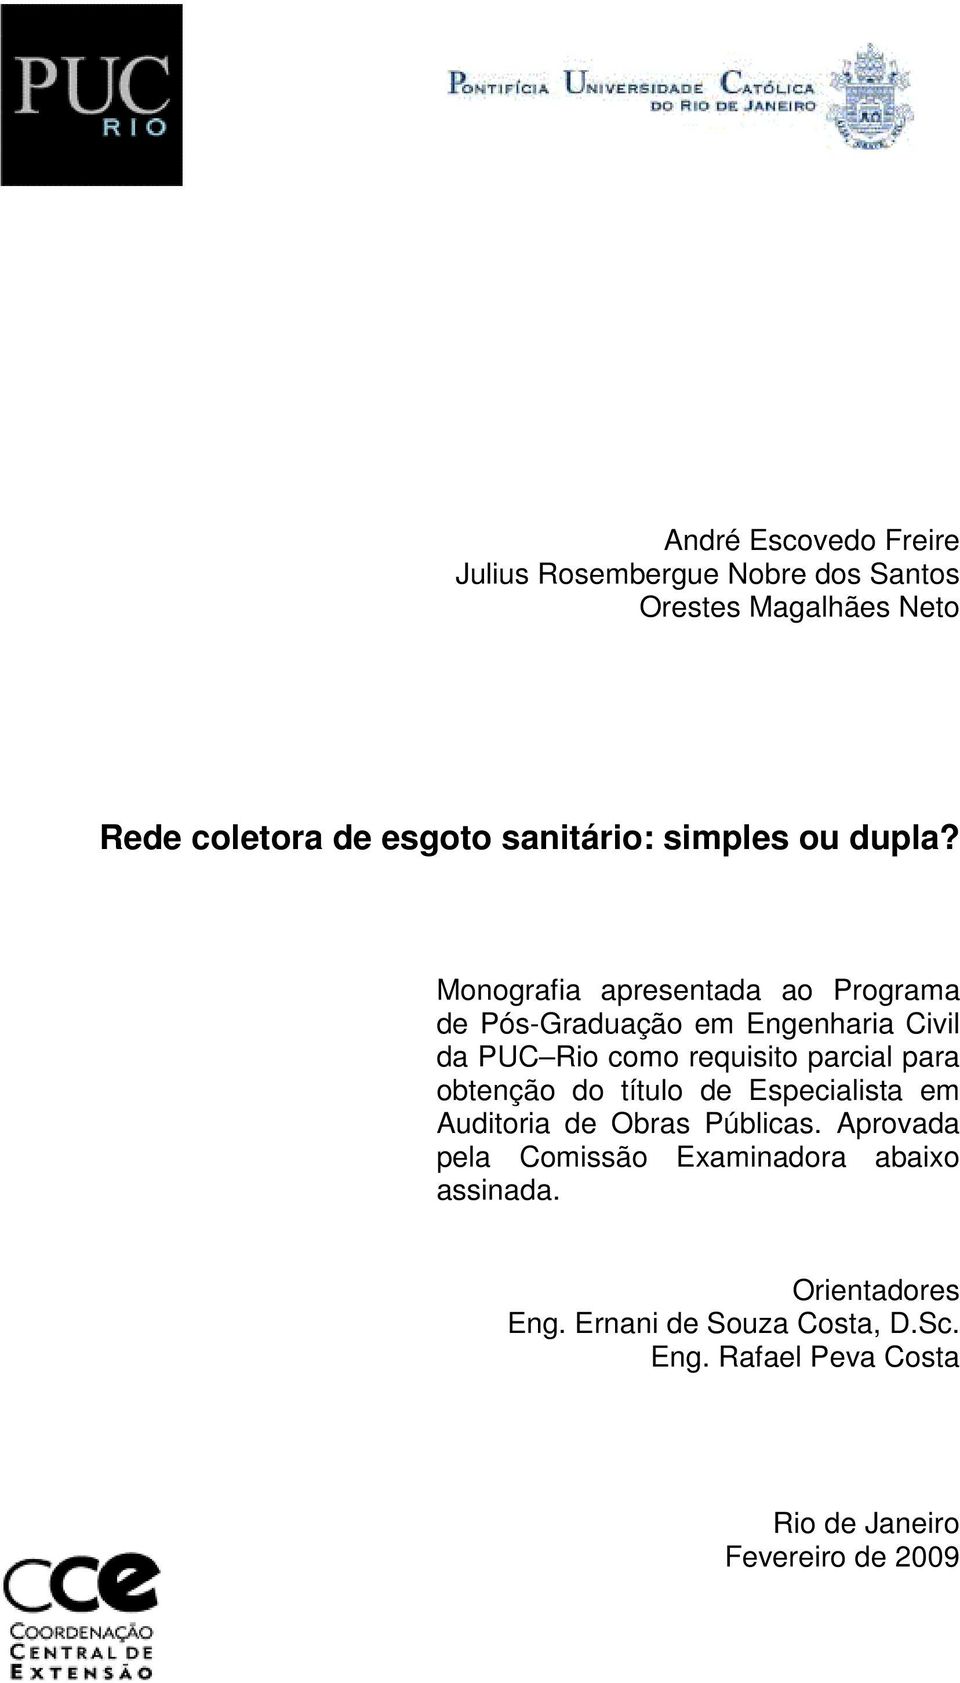 Monografia apresentada ao Programa de Pós-Graduação em Engenharia Civil da PUC Rio como requisito parcial para